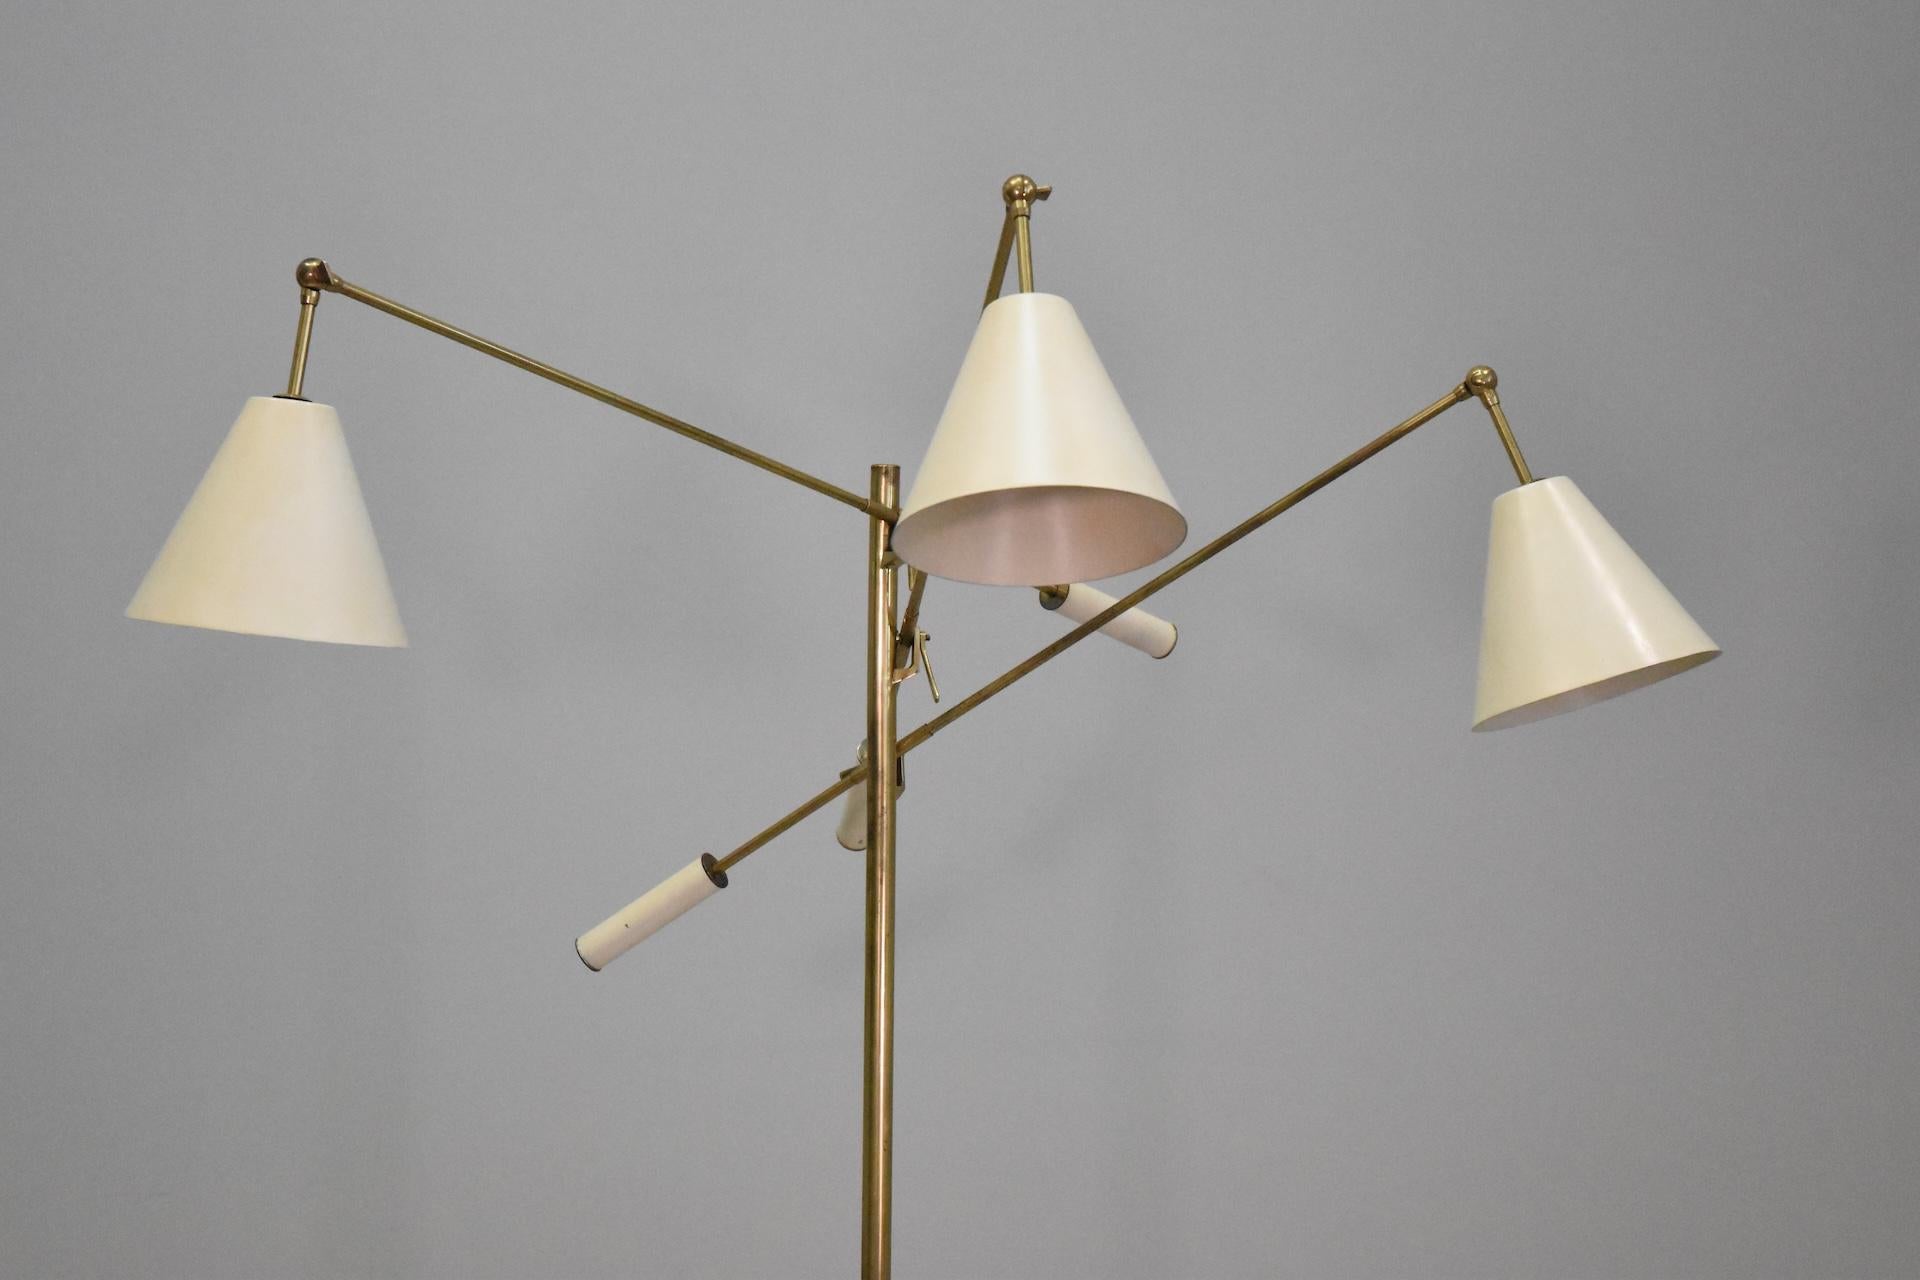 Angelo Lelli per Arredoluce, lampada da terra Triennale, ottone n. l, Italia, circa 1953. Questa lampada iconica è stata progettata da Angello Lelii per Arredoluce in Italia nel 1953. ha tre cappelli ciascuno montato su un'asta lunga e raggruppata